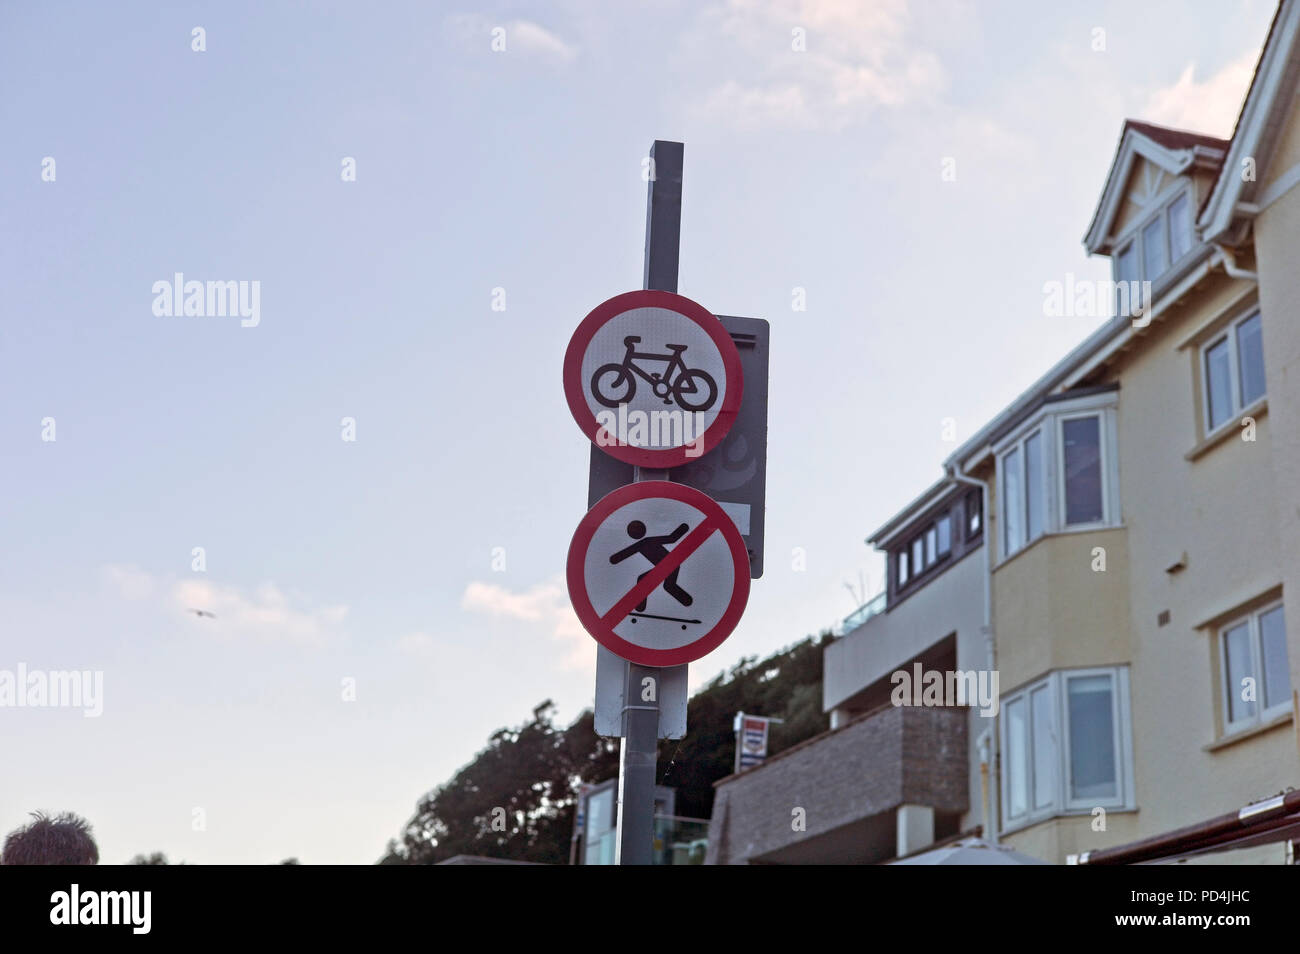 Pas de planche à roulettes et pas de vélo - déroutant la signalisation routière Banque D'Images